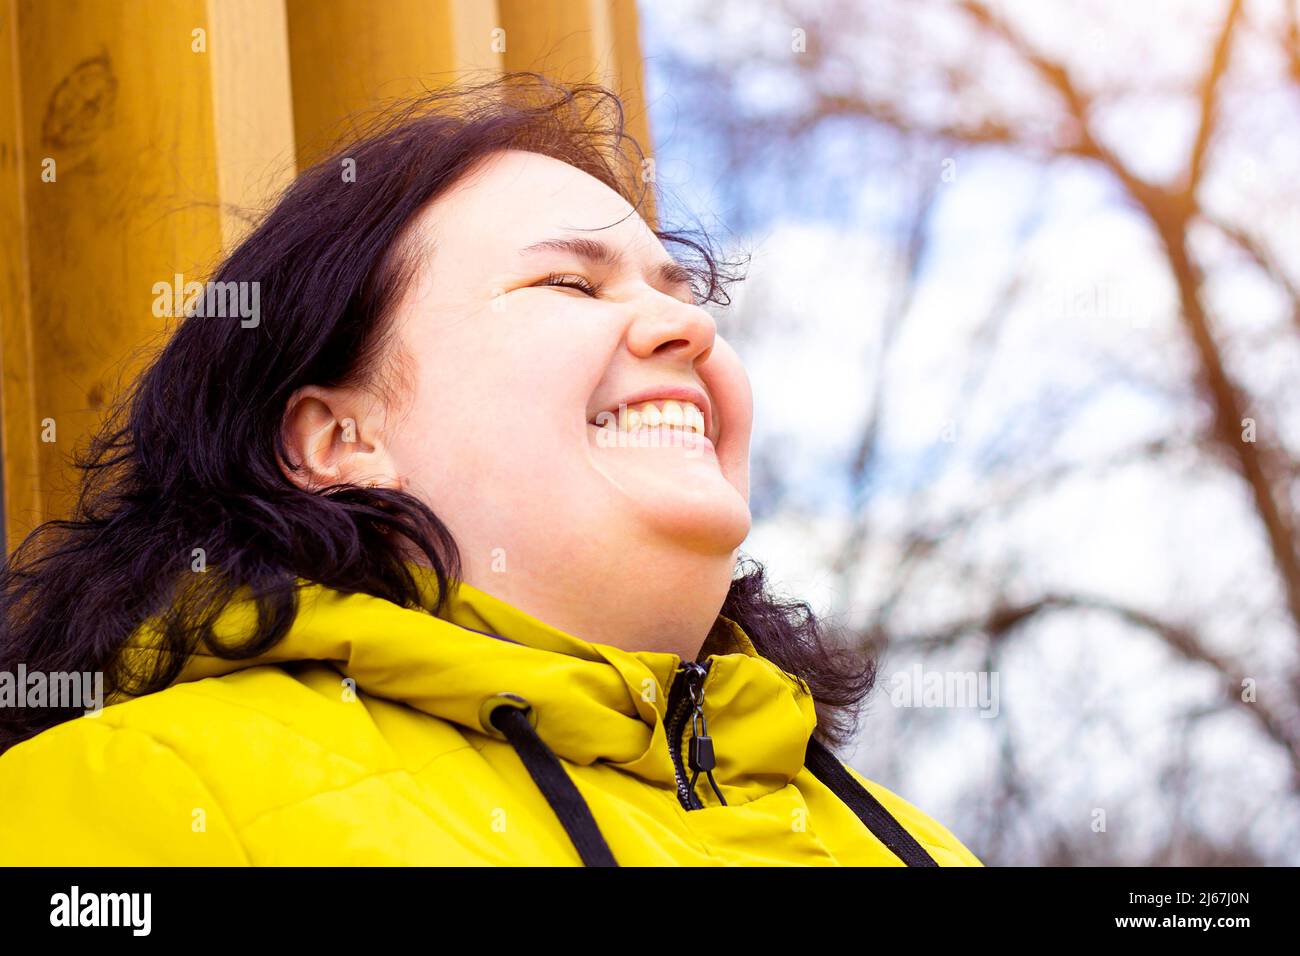 Glücklich attraktiv mollig übergewichtig kaukasische Frau lächelnd Porträt im Freien. Fröhliche hübsche Körper positive Person lachend während des Spaziergangs im Park. Stockfoto